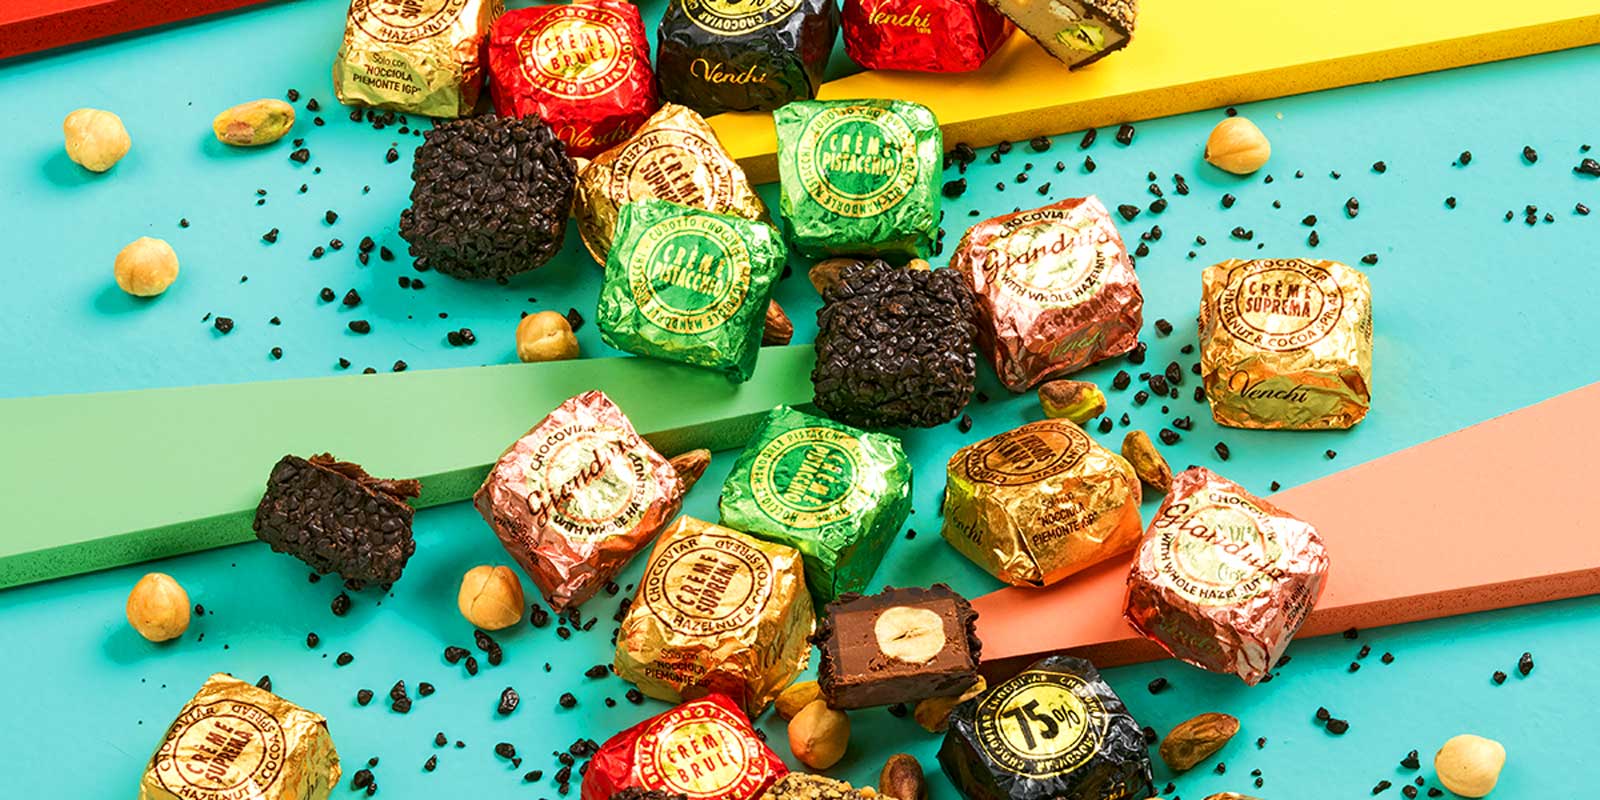 Venchi Schokoladen und Pralinen aus dem Piemont Köstliche, hausgemachte und natürliche Rezepte, die zum Genießen beitragen sollen.
Seit 1878 bieten wir jeden Tag Freudensmomente im perfekten italienischen Stil, wir denken an dein Wohlbefinden.